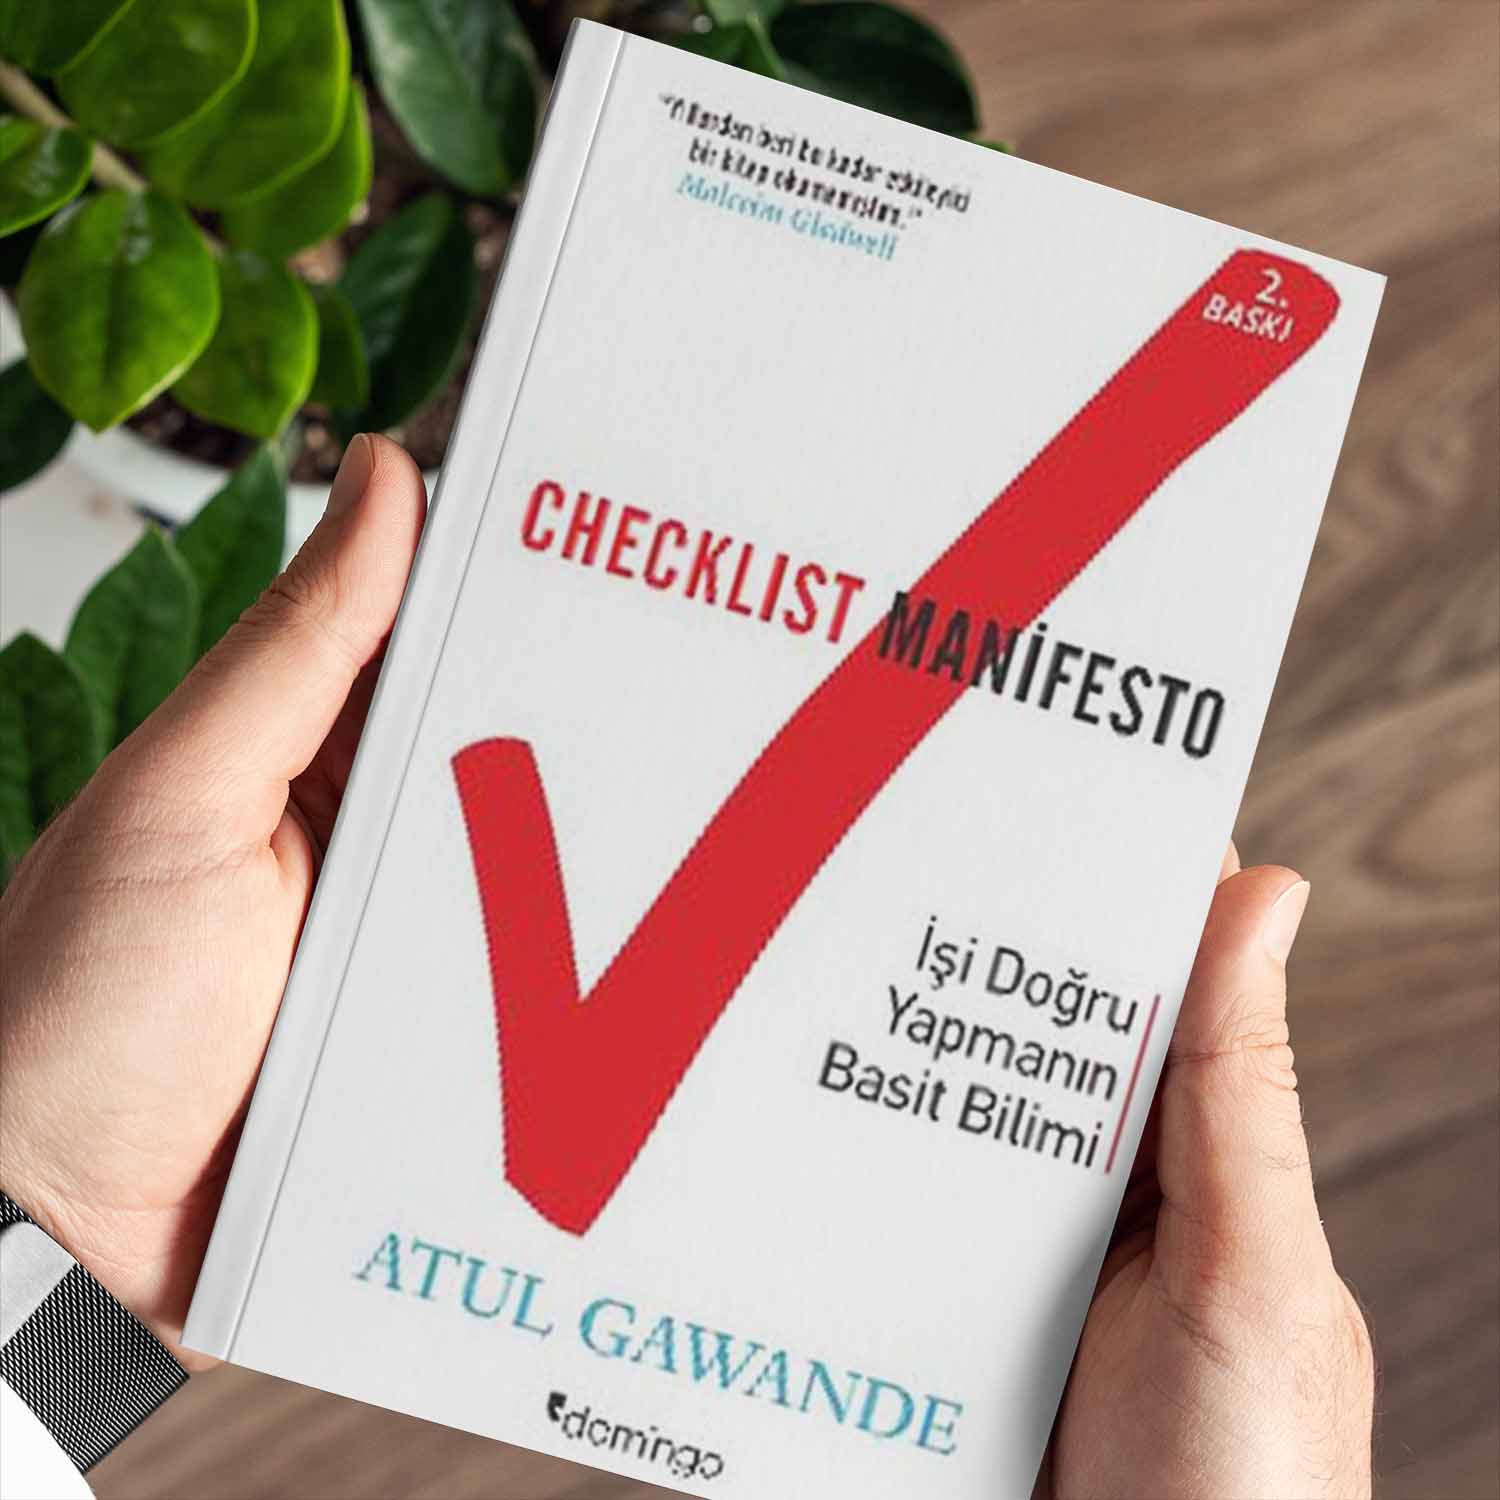 checklist manifesto